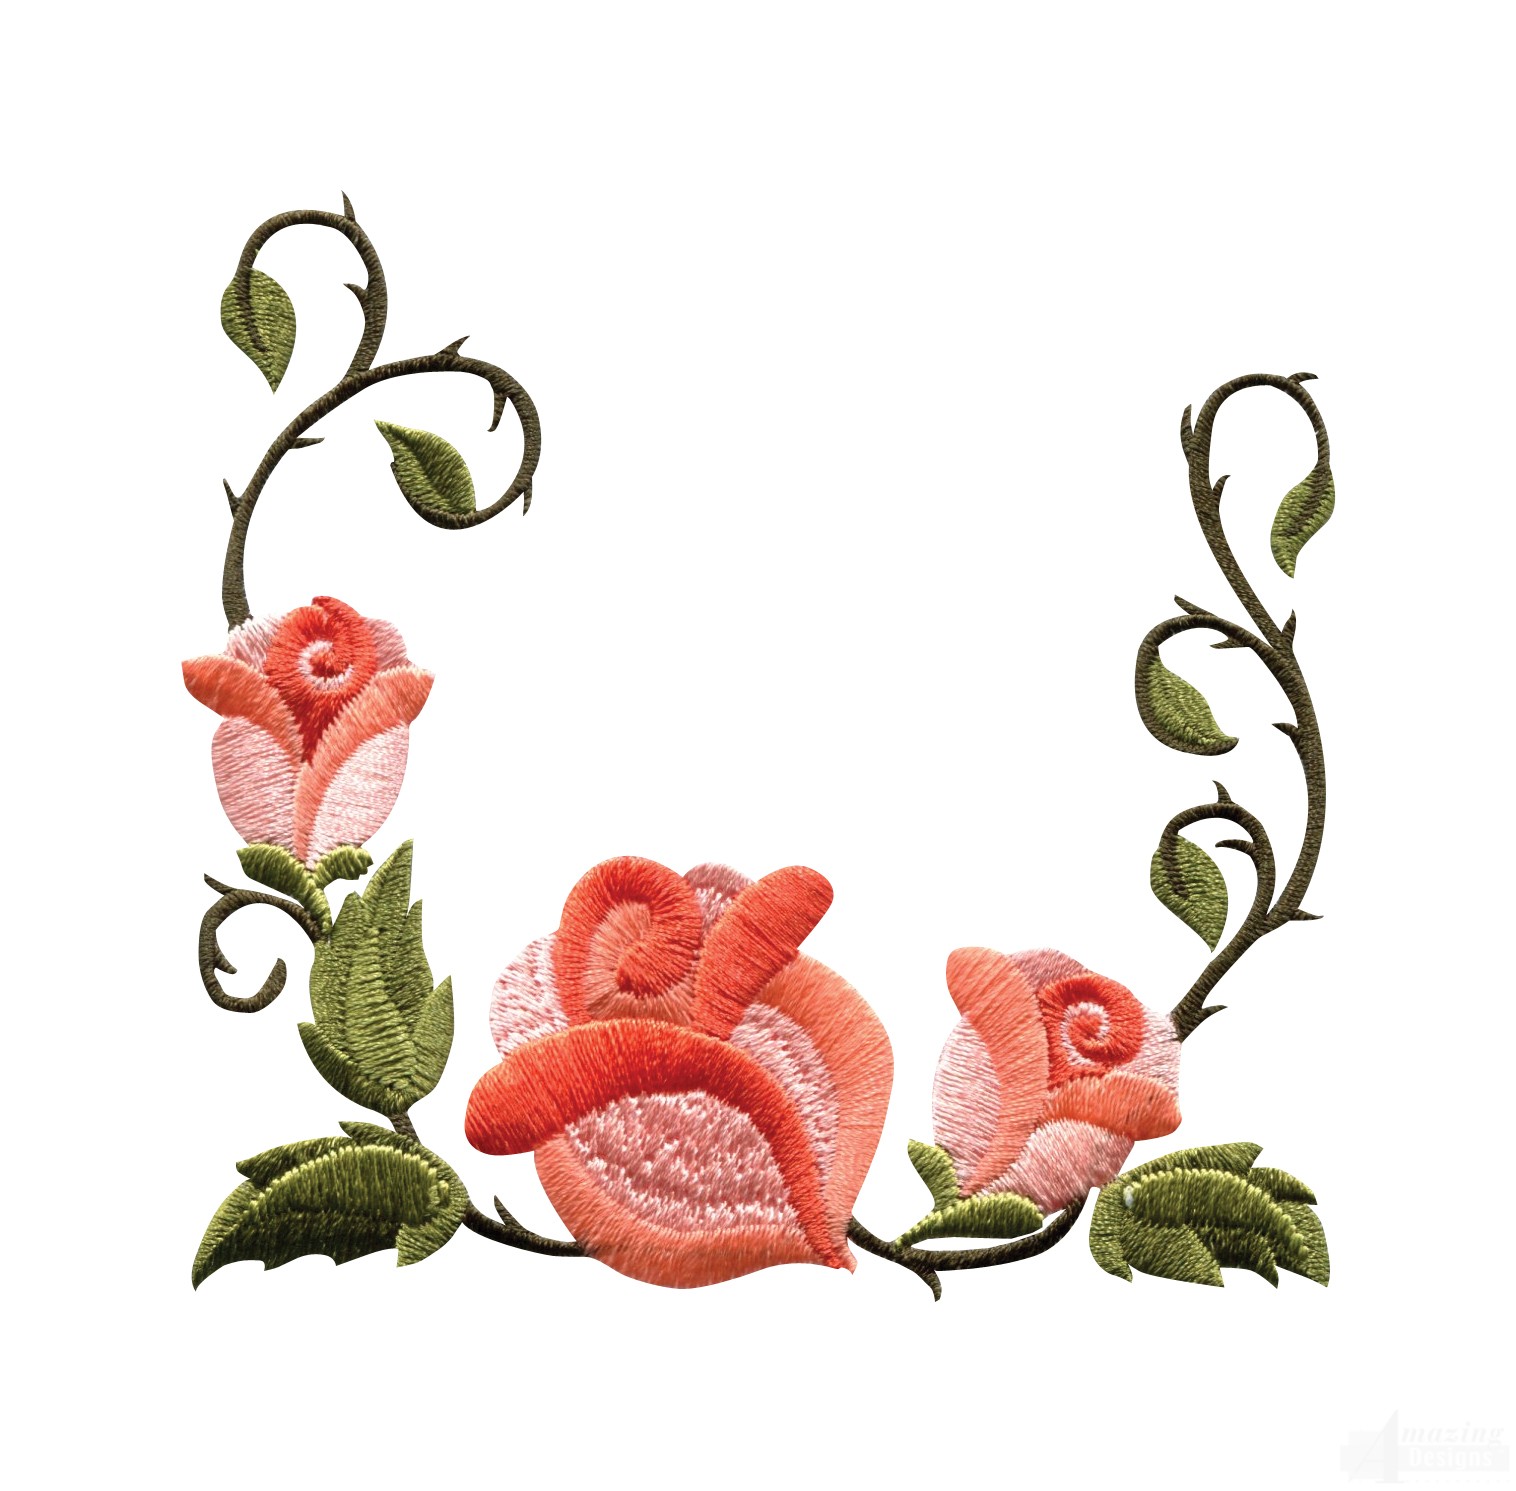 Flowers For > Rose Flower Design Border